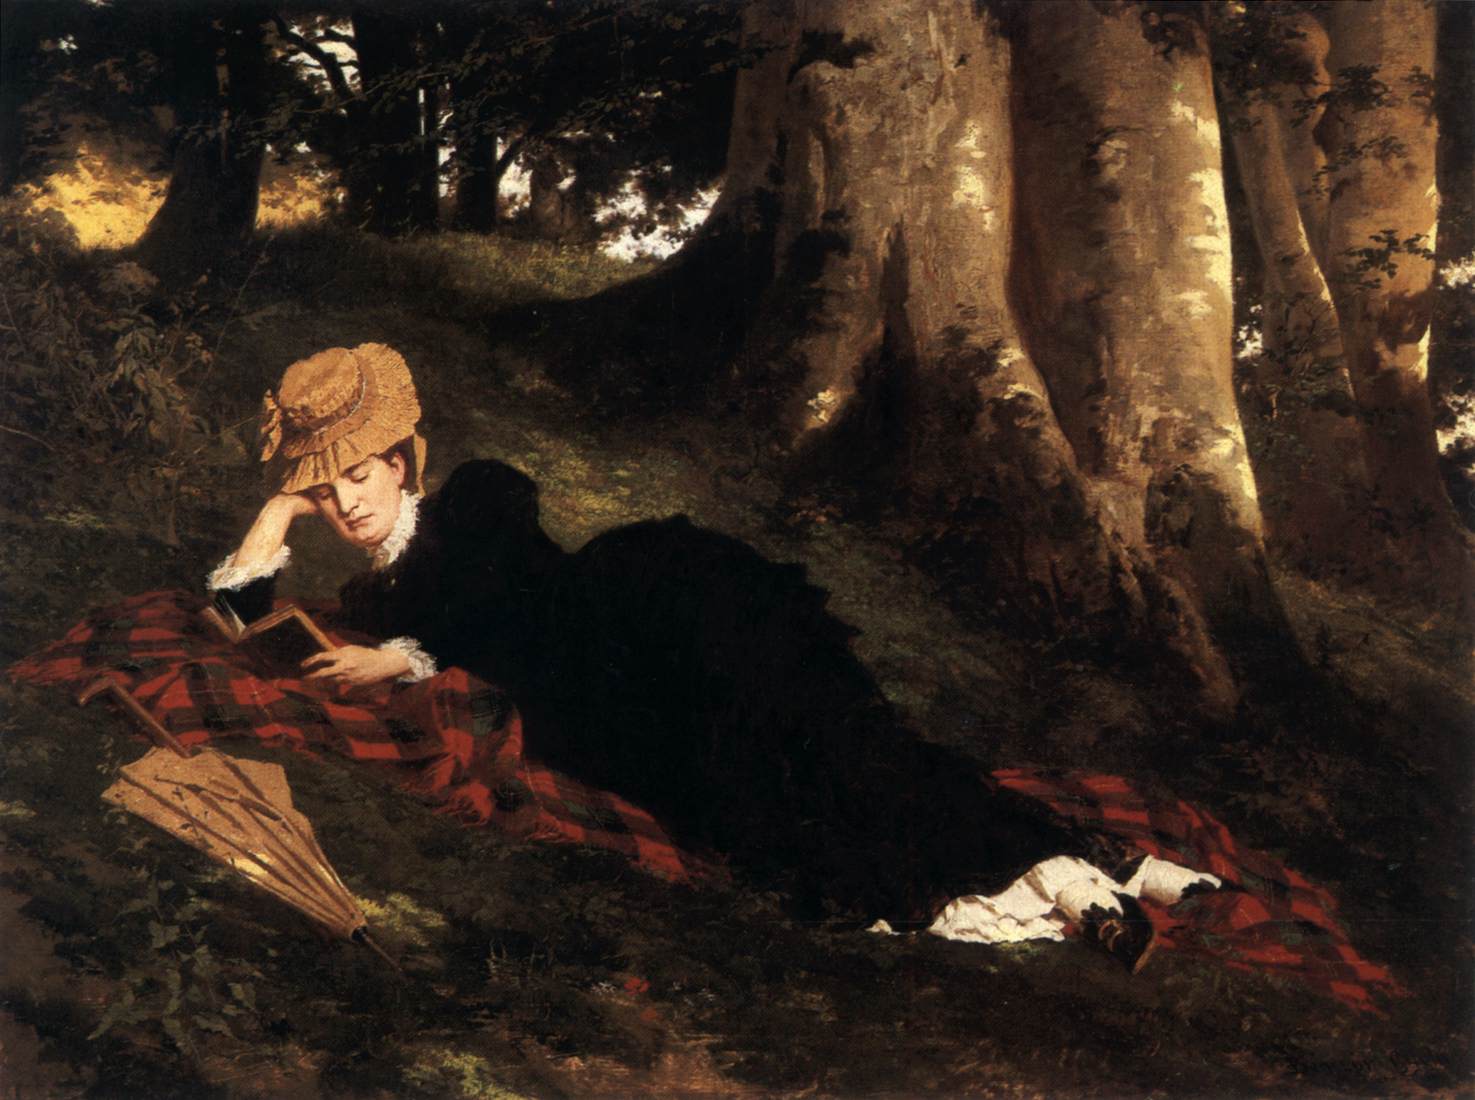 Læser kvinden i skoven